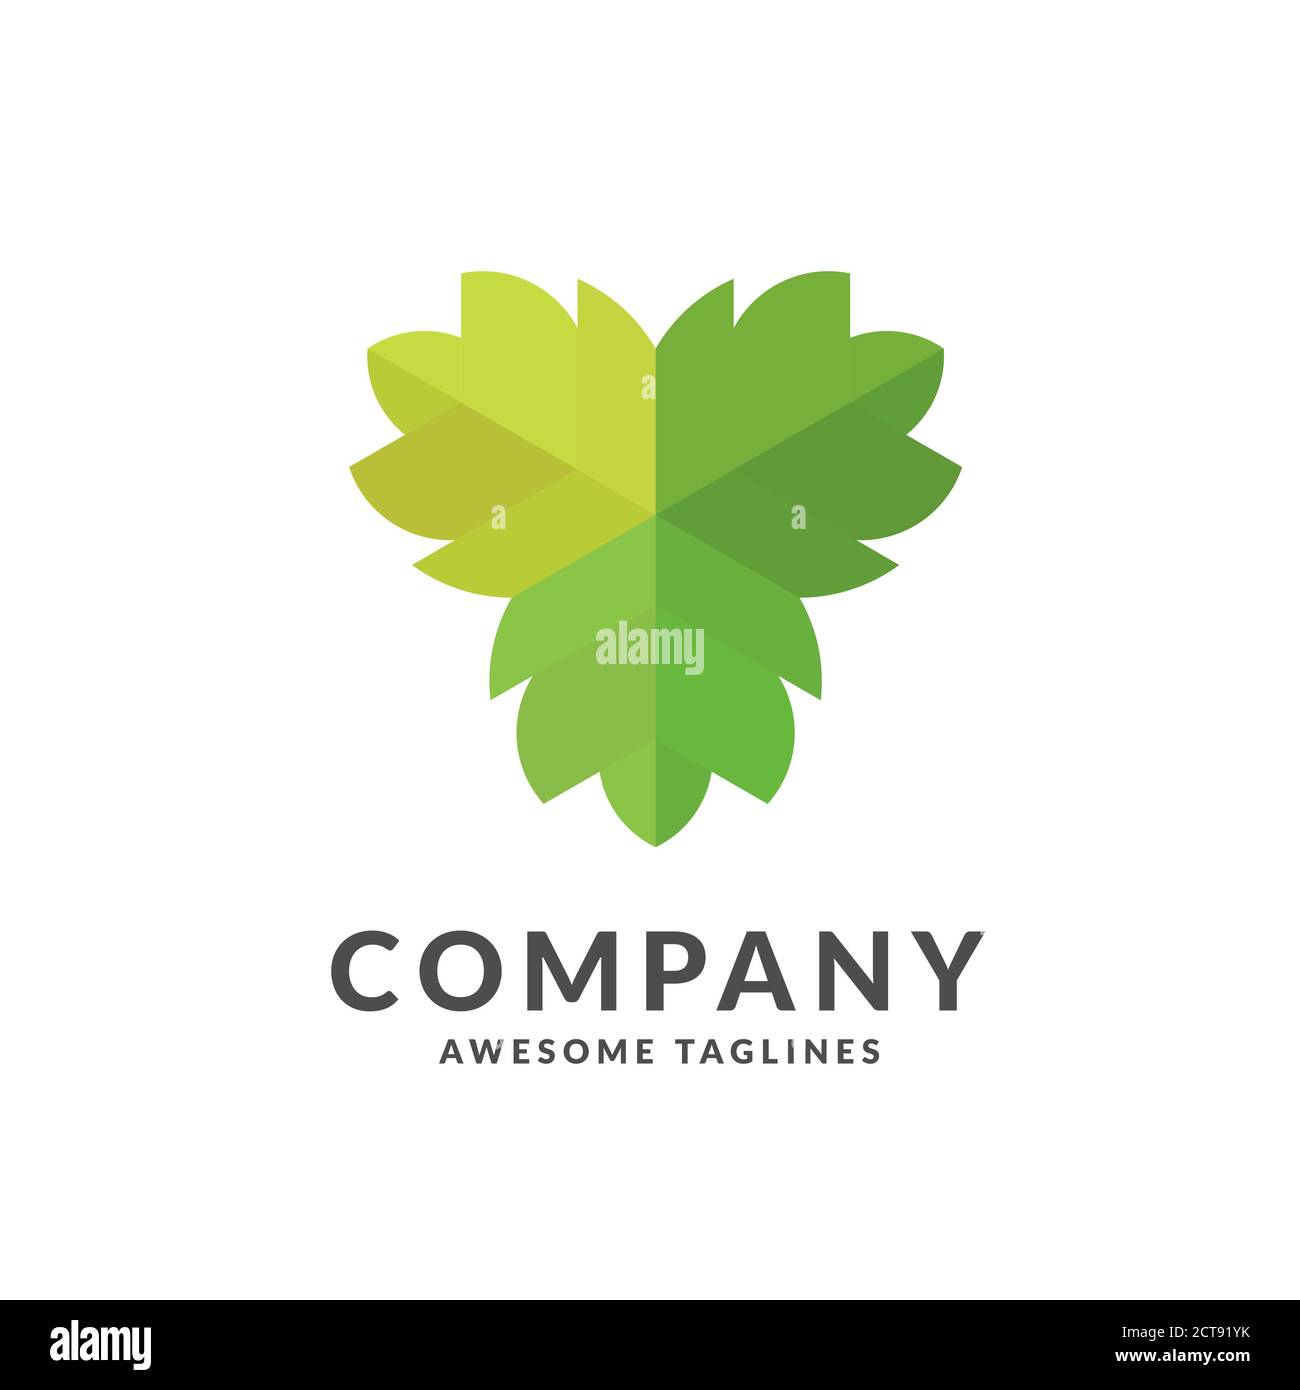 Logo simple et élégant en forme de feuille verte, illustrations de plantes stylisées pour concevoir des logos Illustration de Vecteur